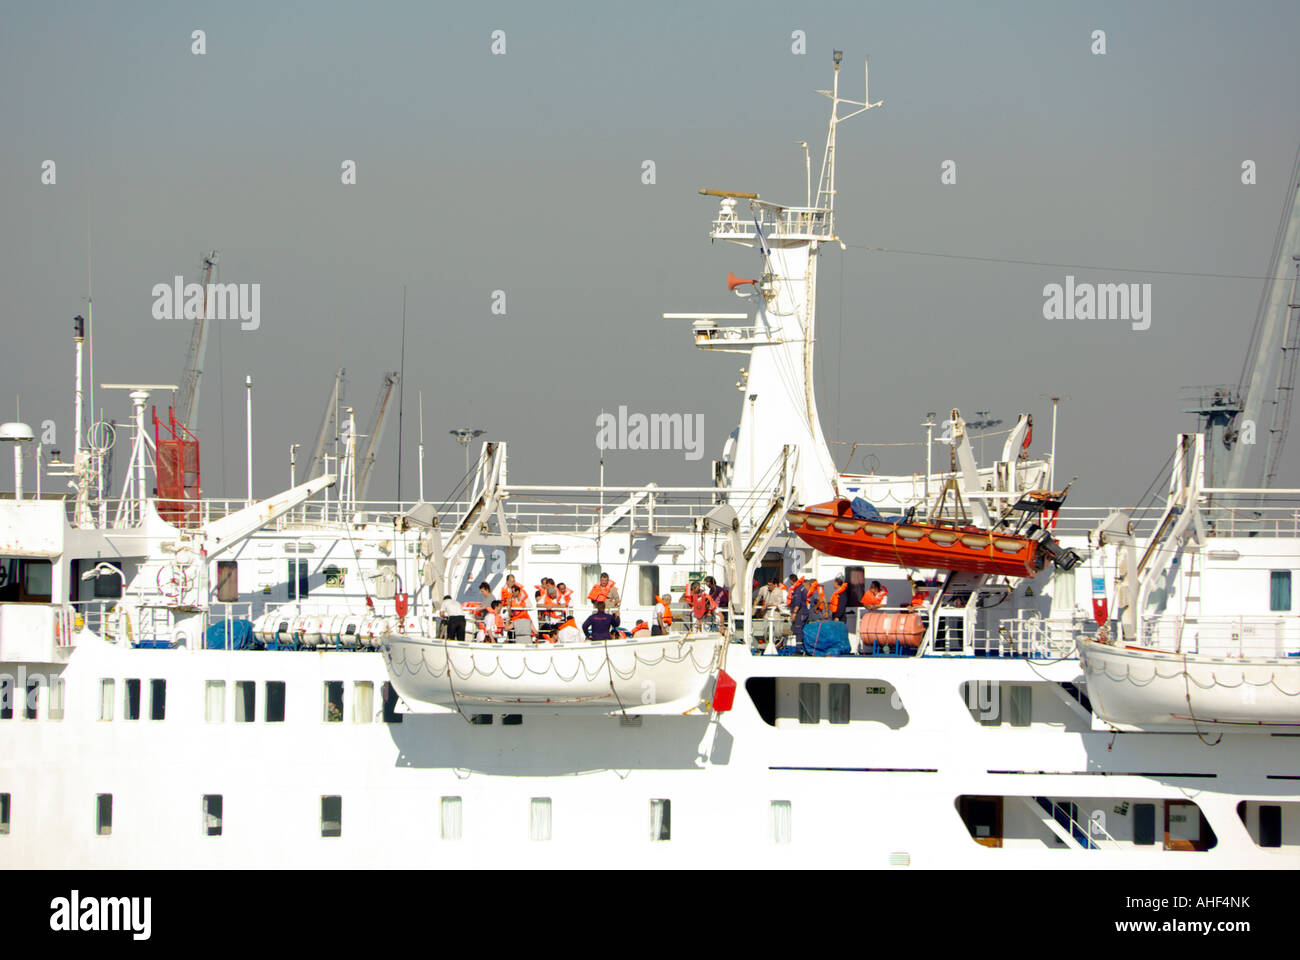 Thessaloniki Hafen vertäut Fähre crew üben Notevakuierung bohren Senken ein Rettungsboot mit Menschen an Bord Griechenland Stockfoto